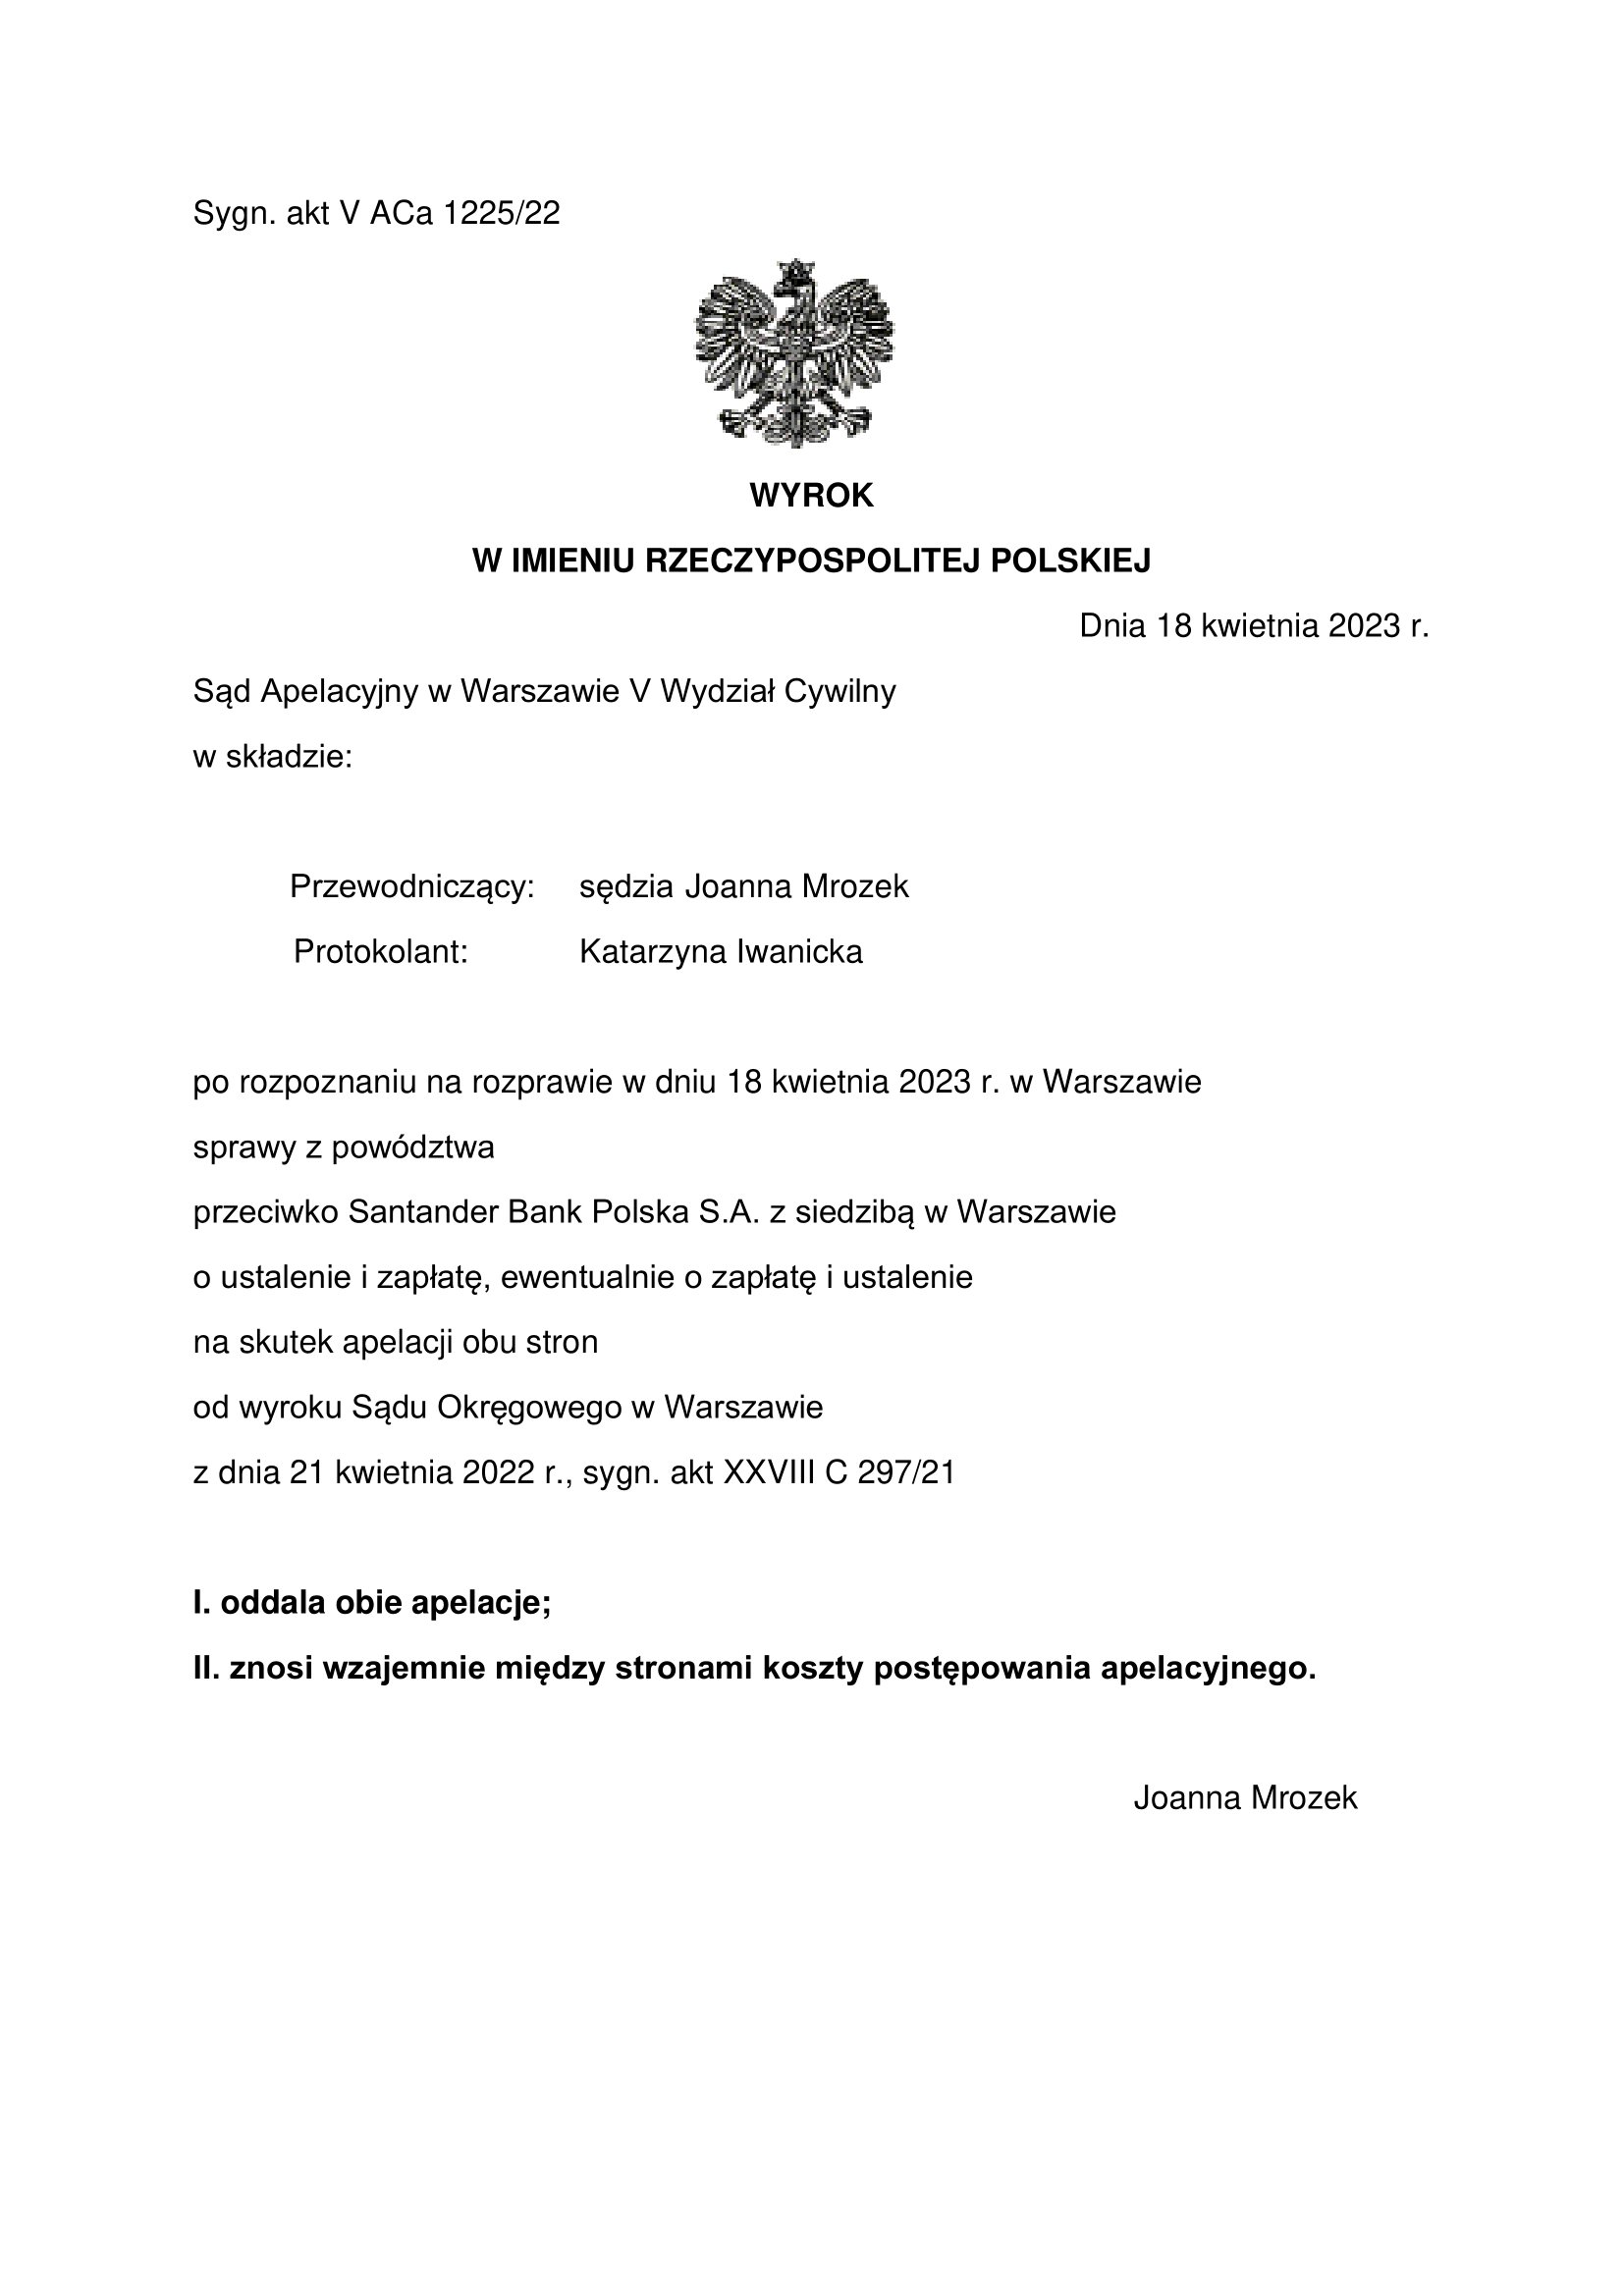 wyrok prawomocny  zSantander Bank Polska S.A.